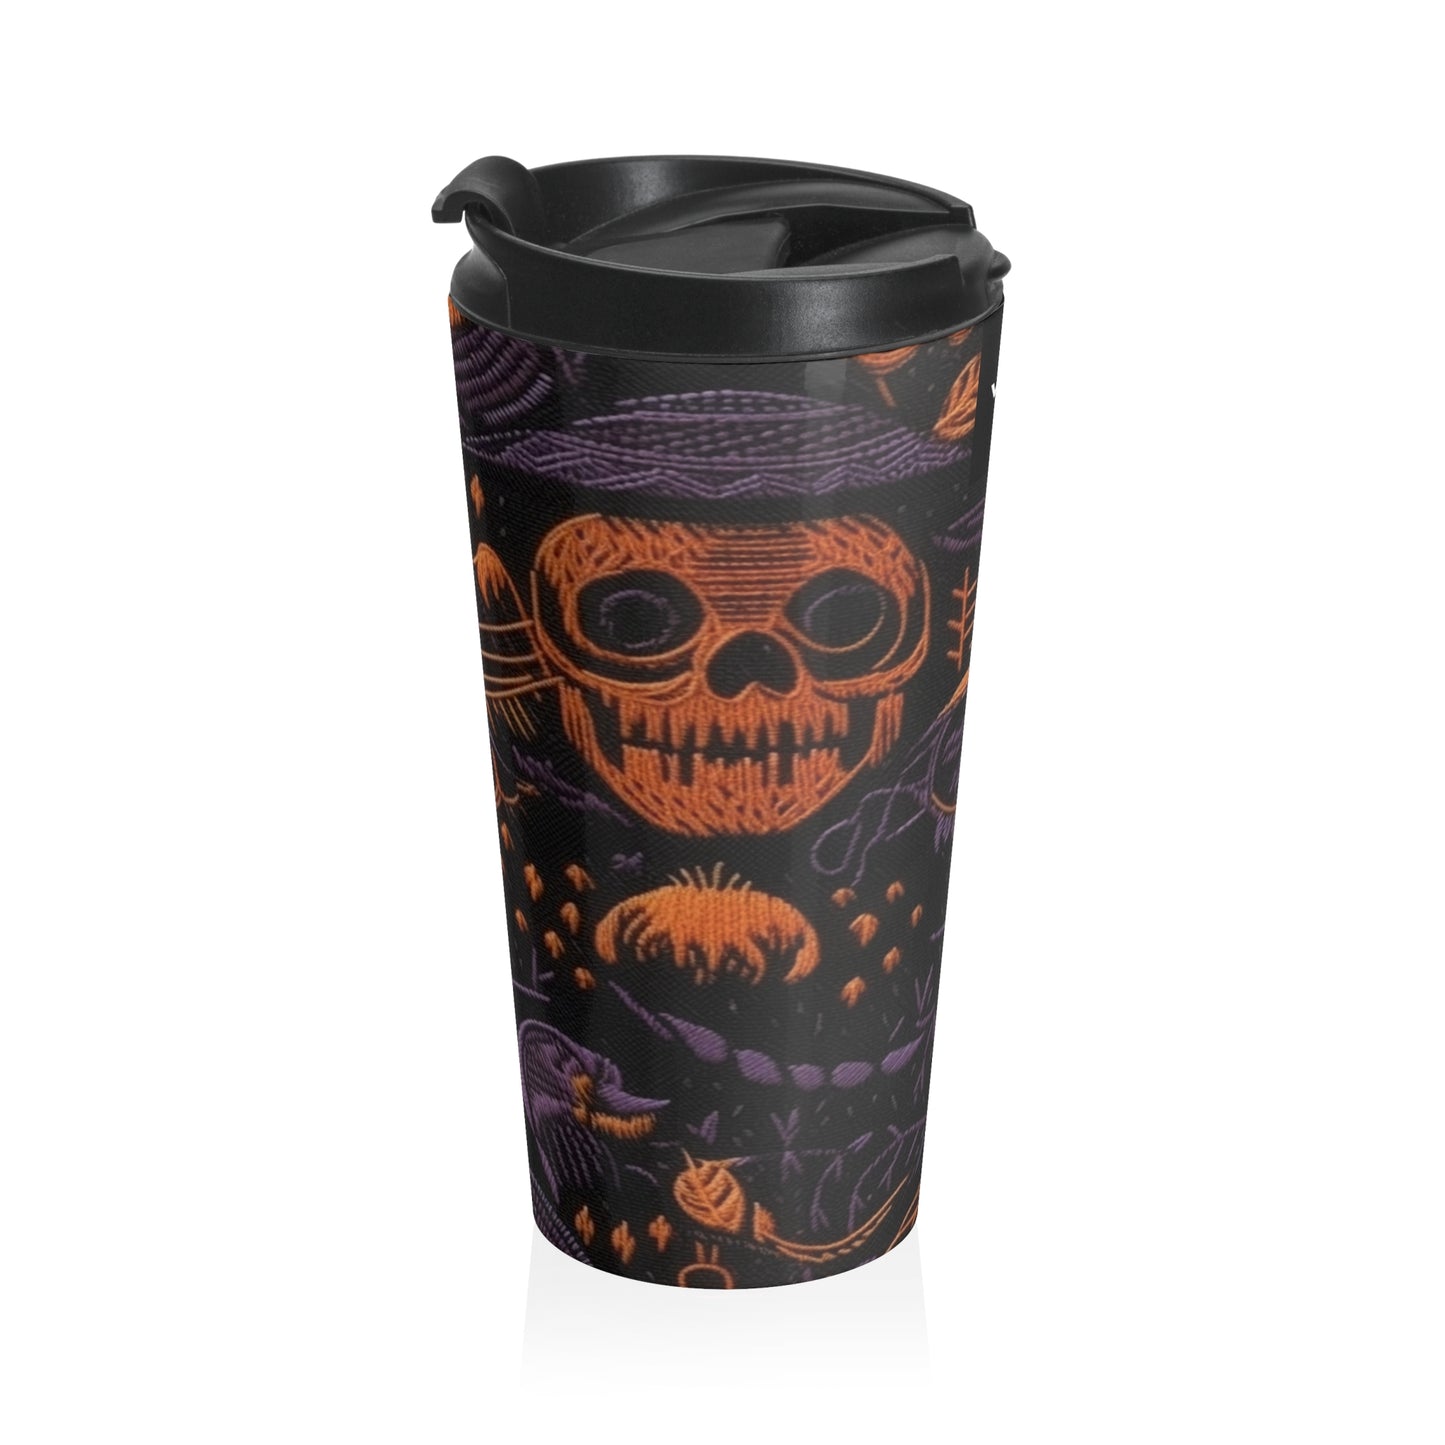 Embroidered Skull Black Purple Stainless Steel Travel Mug